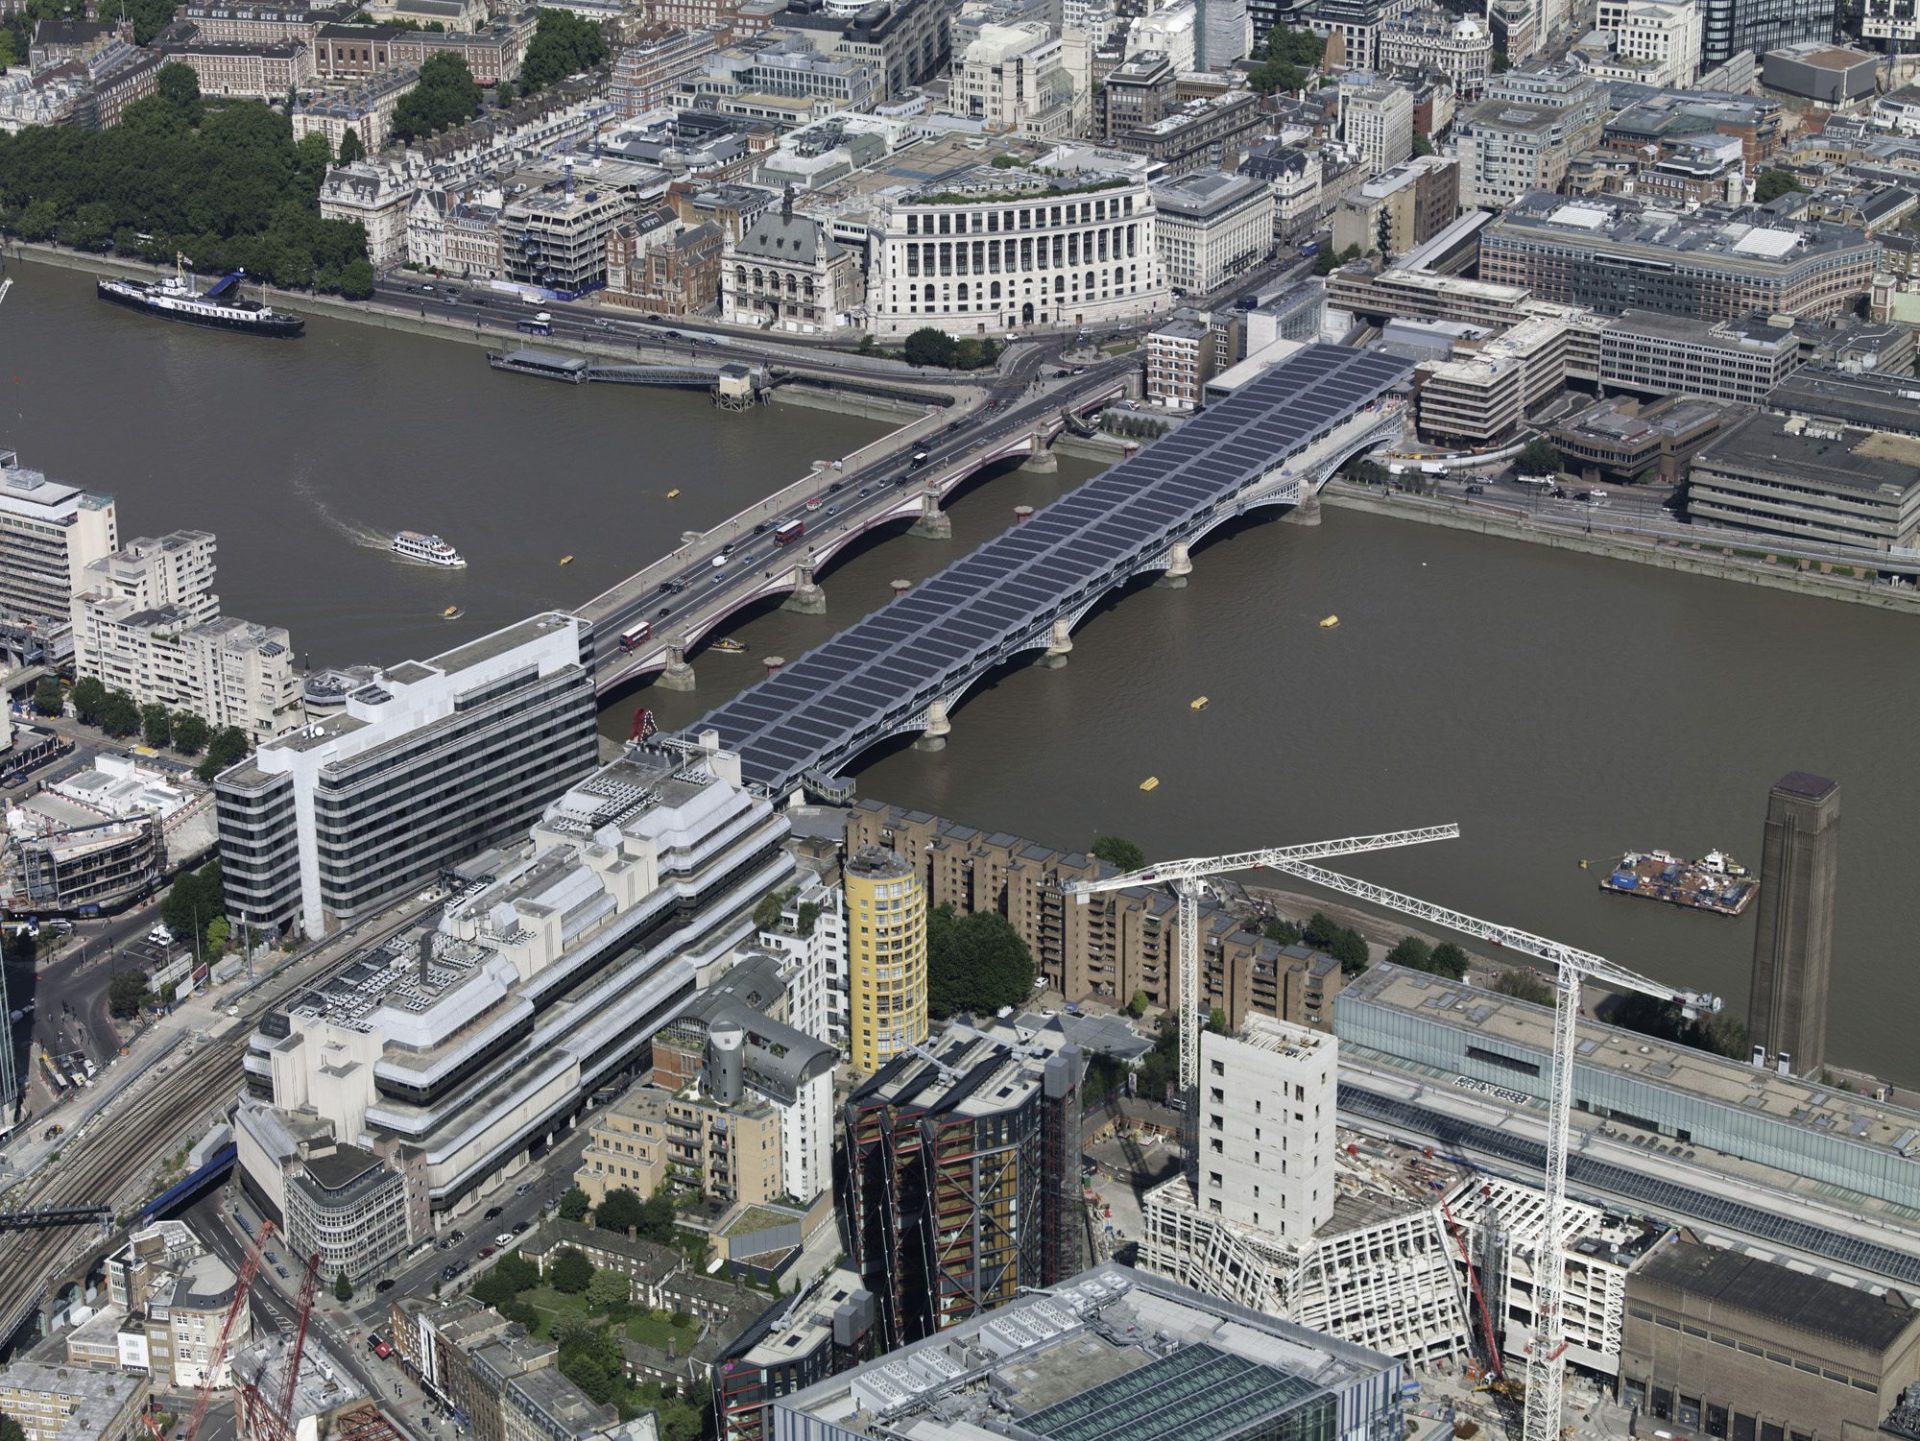  Vista aérea del nuevo puente solar (a la derecha) sobre el Tamésis, en Londres. EFE/Fotografía cedida por Panasonic.